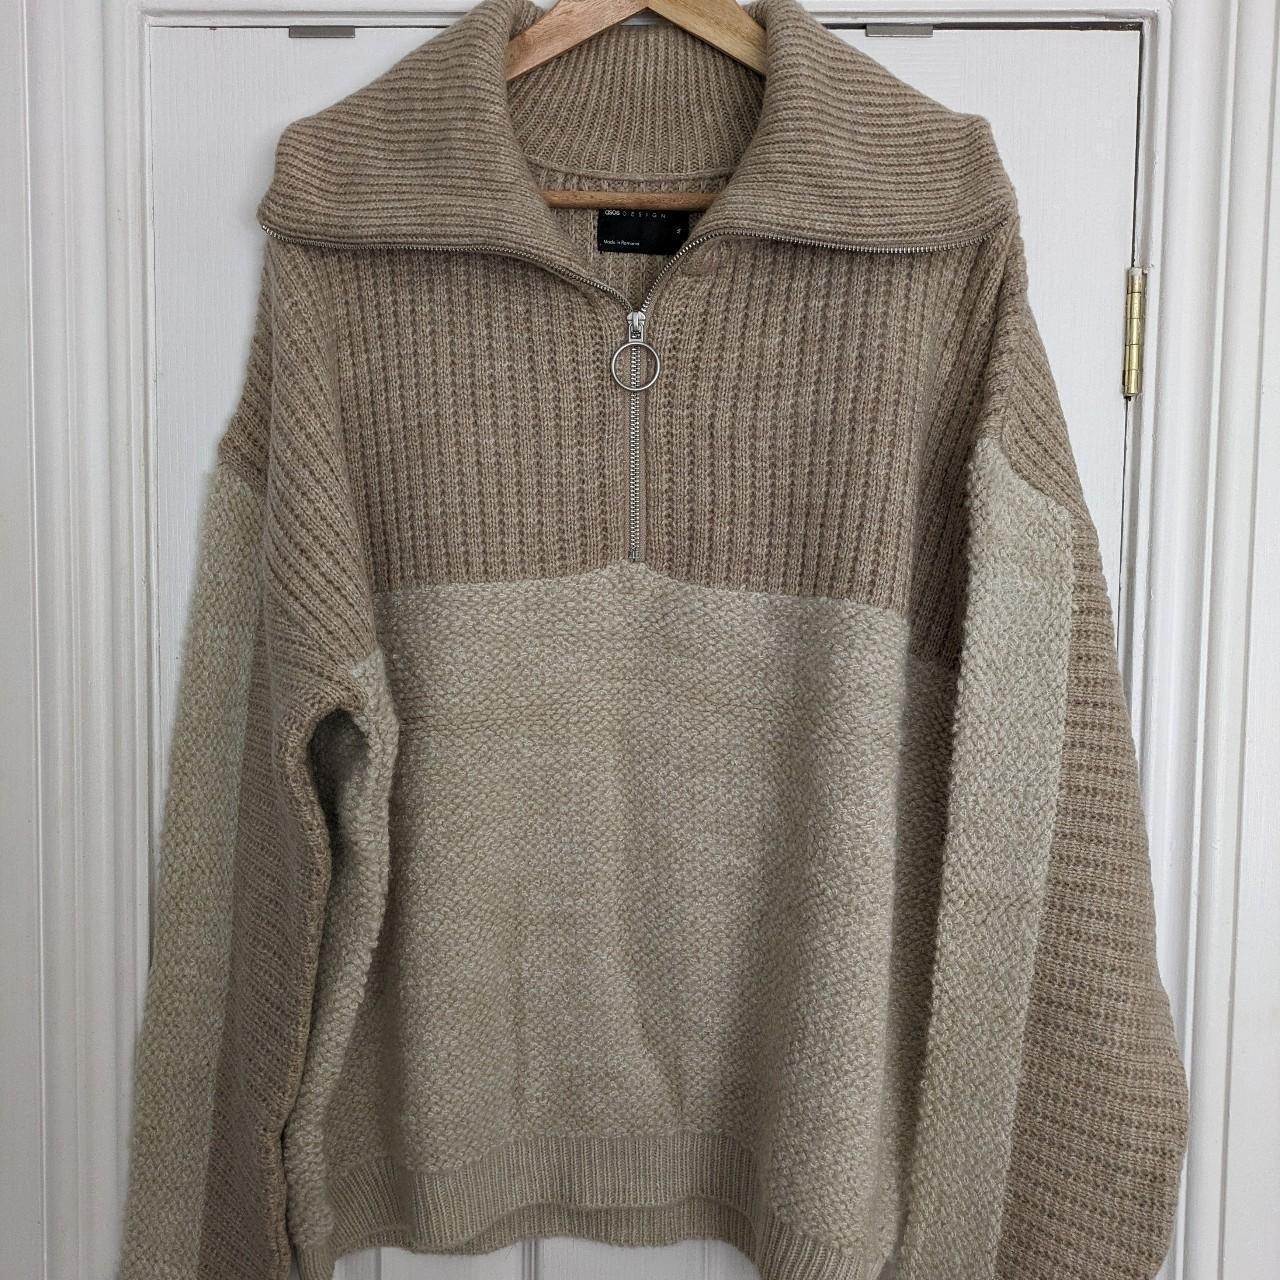 ASOS half zip cosy knitted fleece jumper, oversized... - Depop